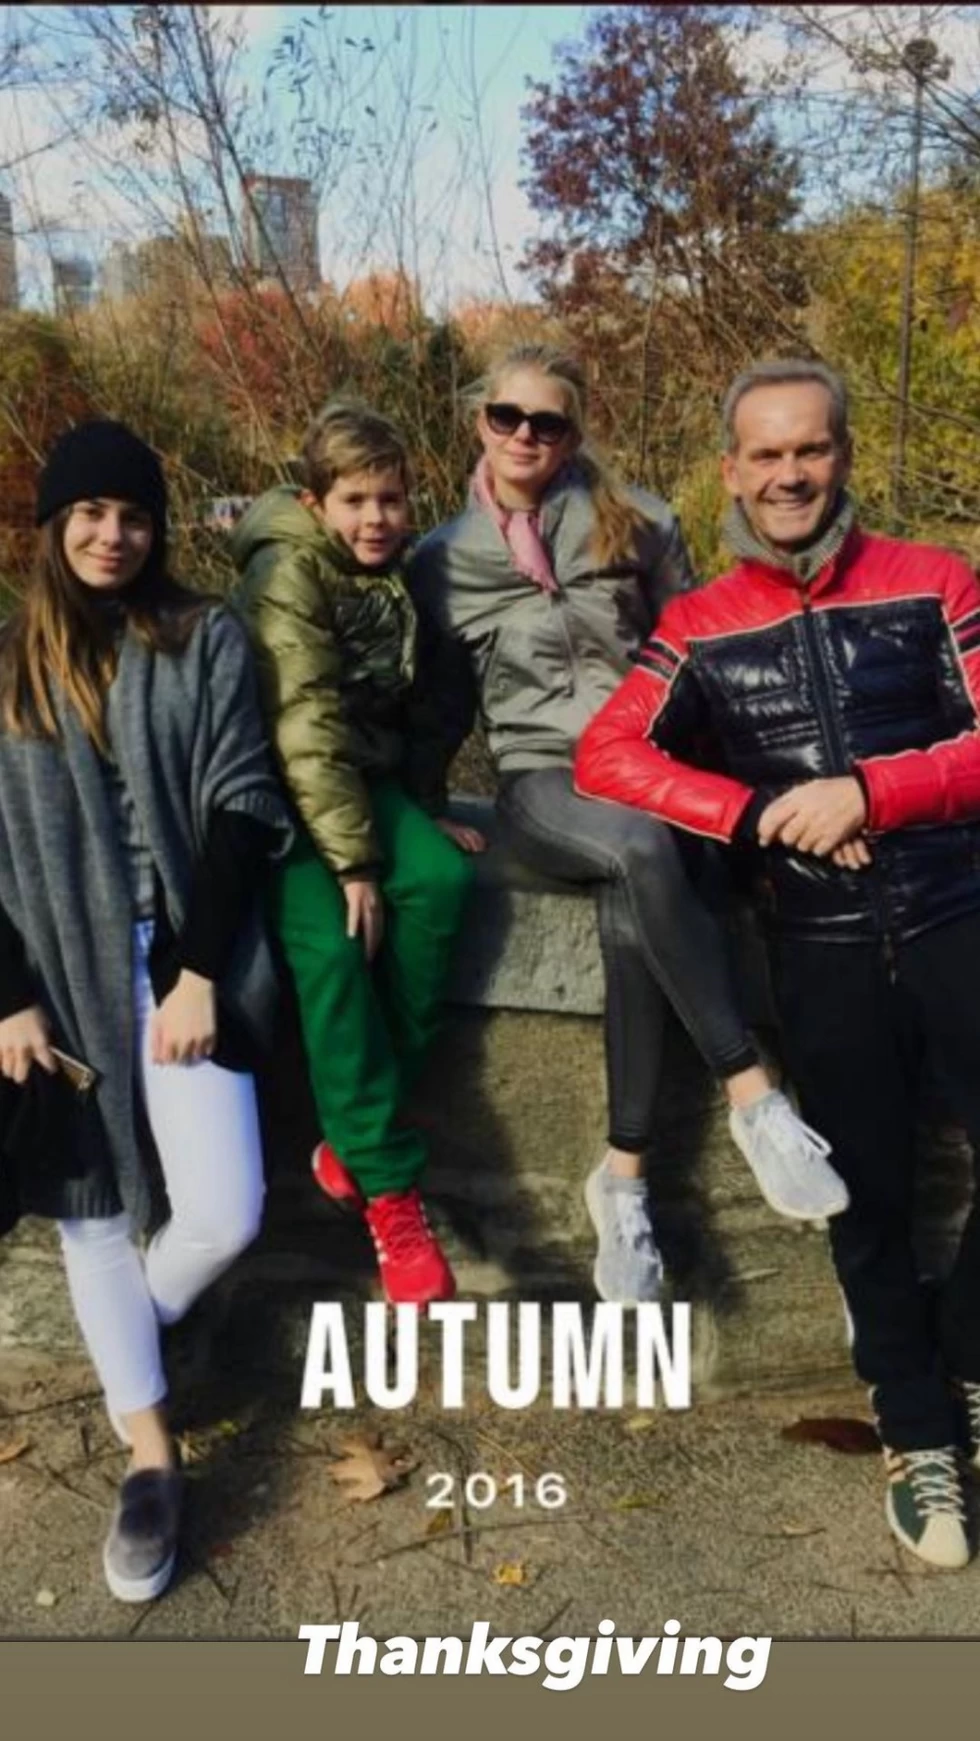 Πέτρος Κωστόπουλος: Η throwback φωτό με τα παιδιά του με αφορμή την ημέρα των Ευχαριστιών